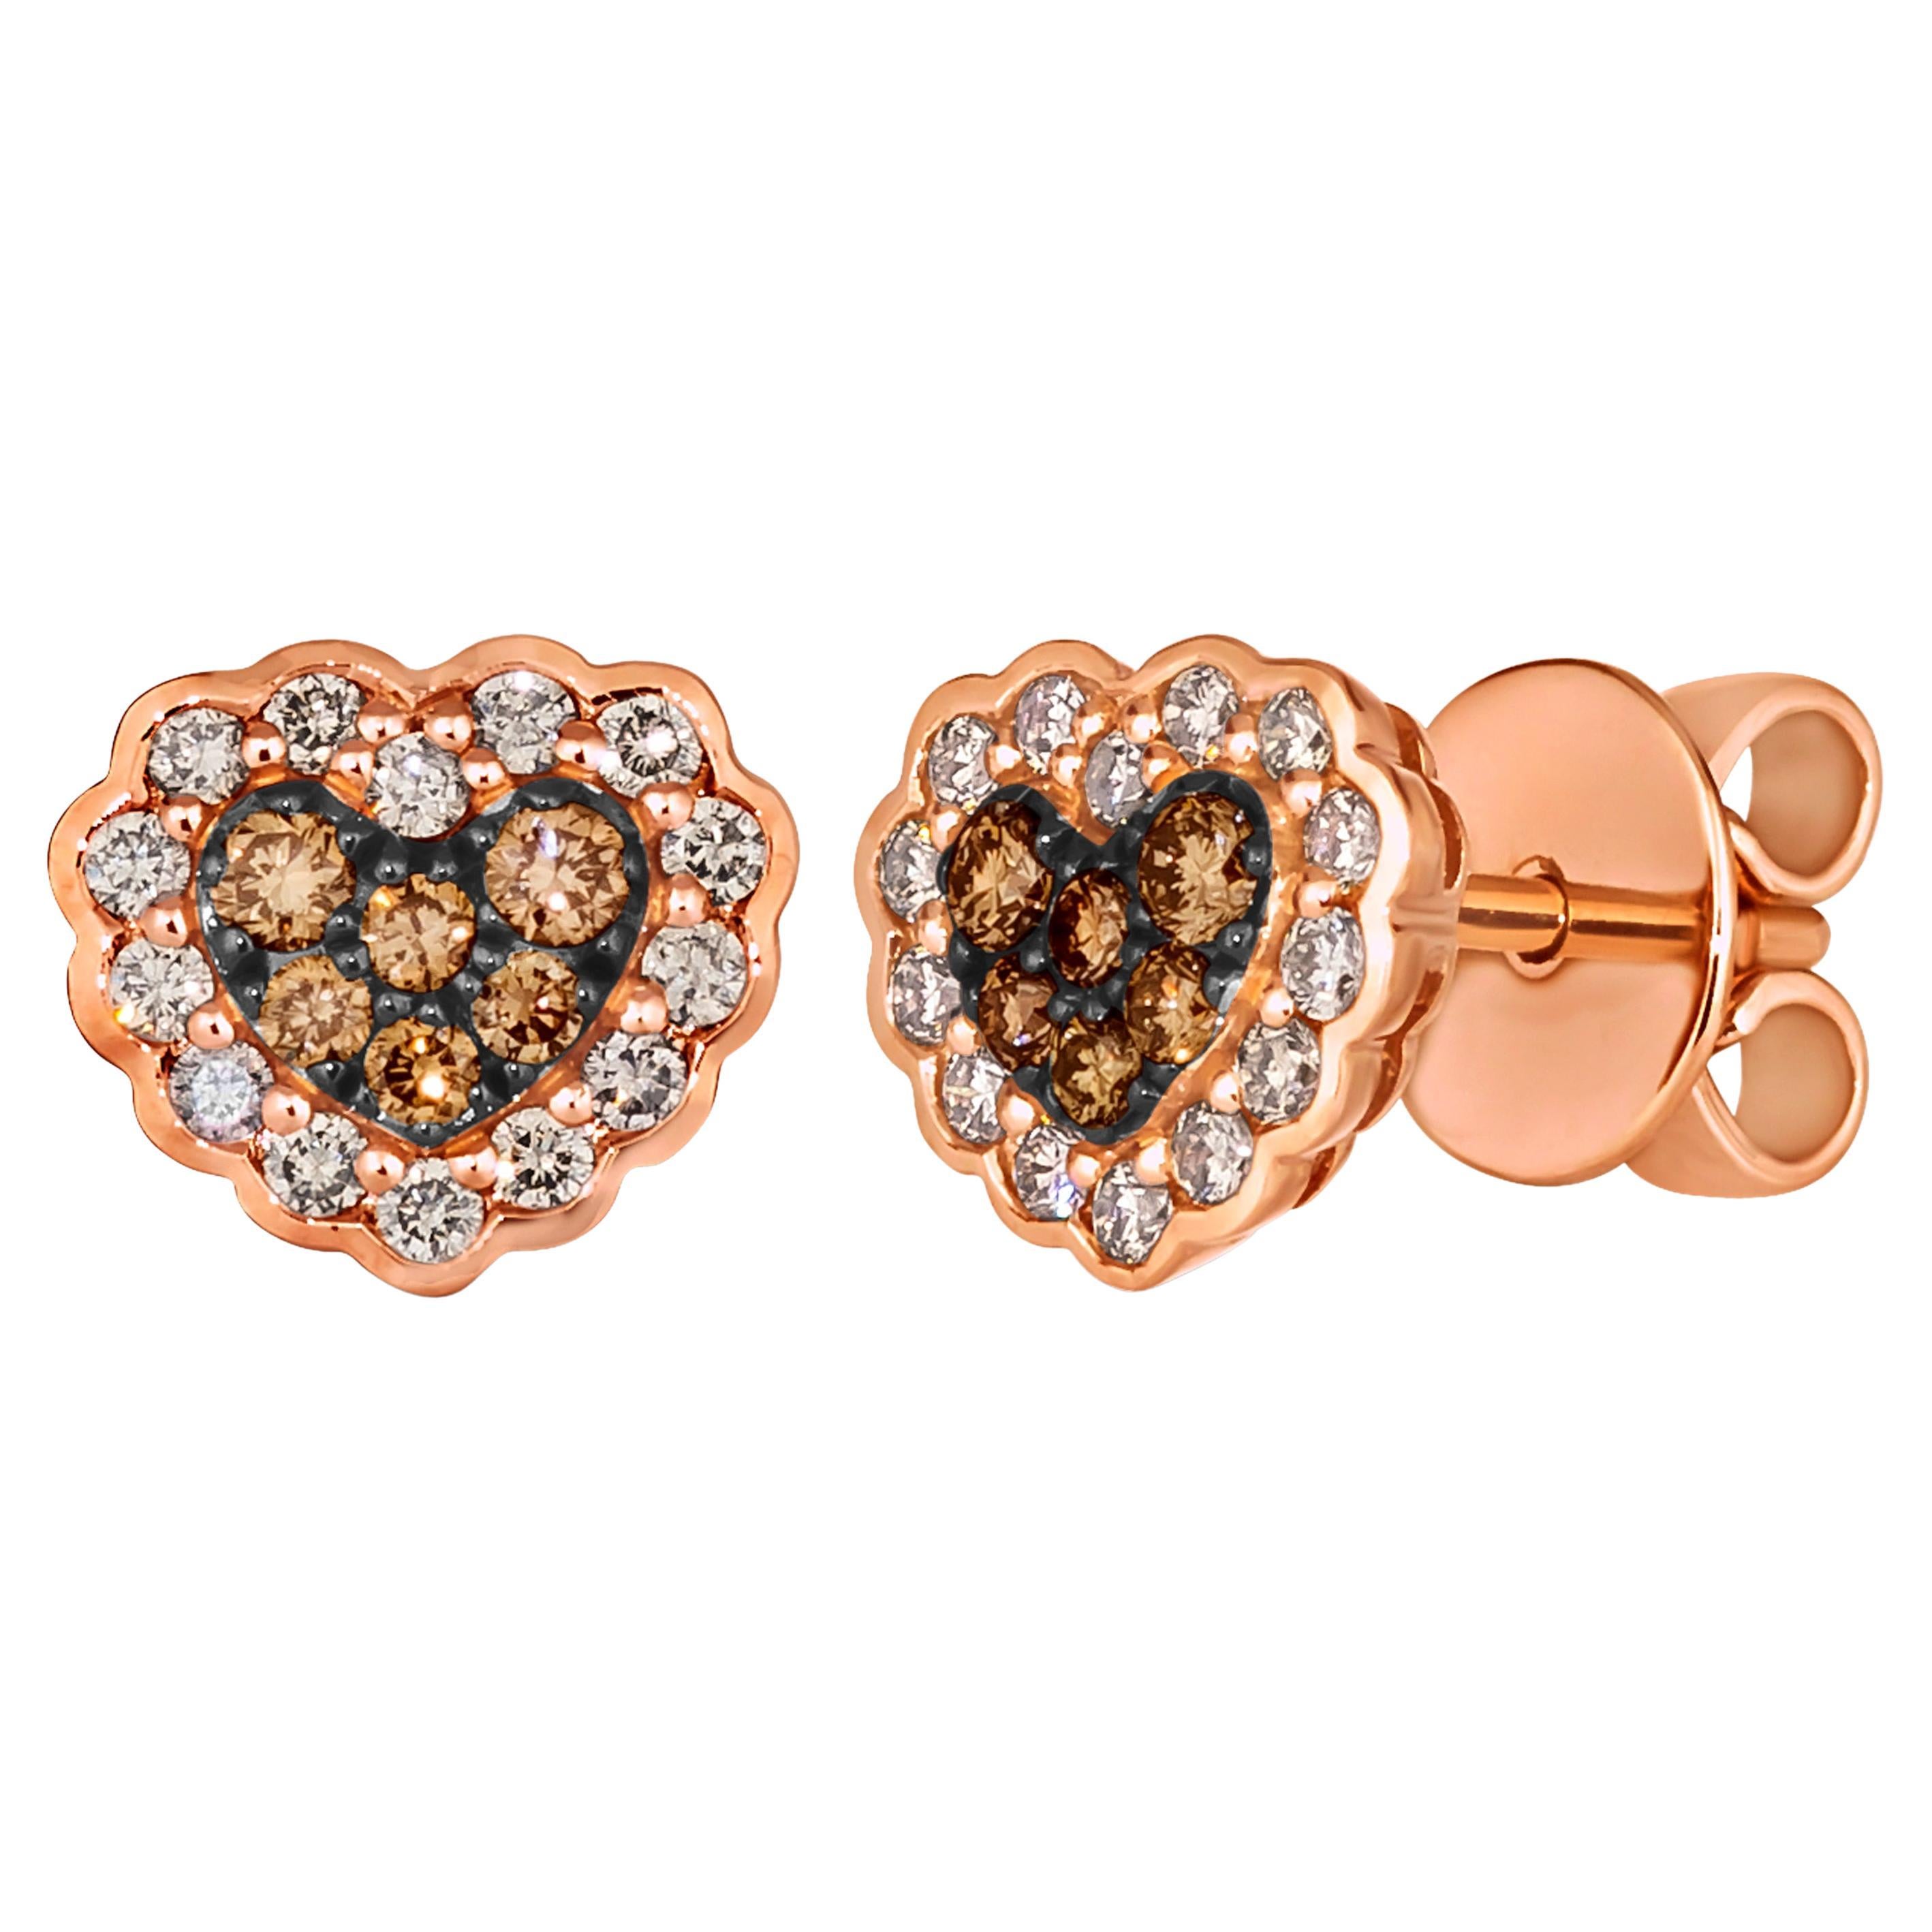 Le Vian Earrings featuring Chocolate Diamonds, Nude Diamonds set in 14K For Sale